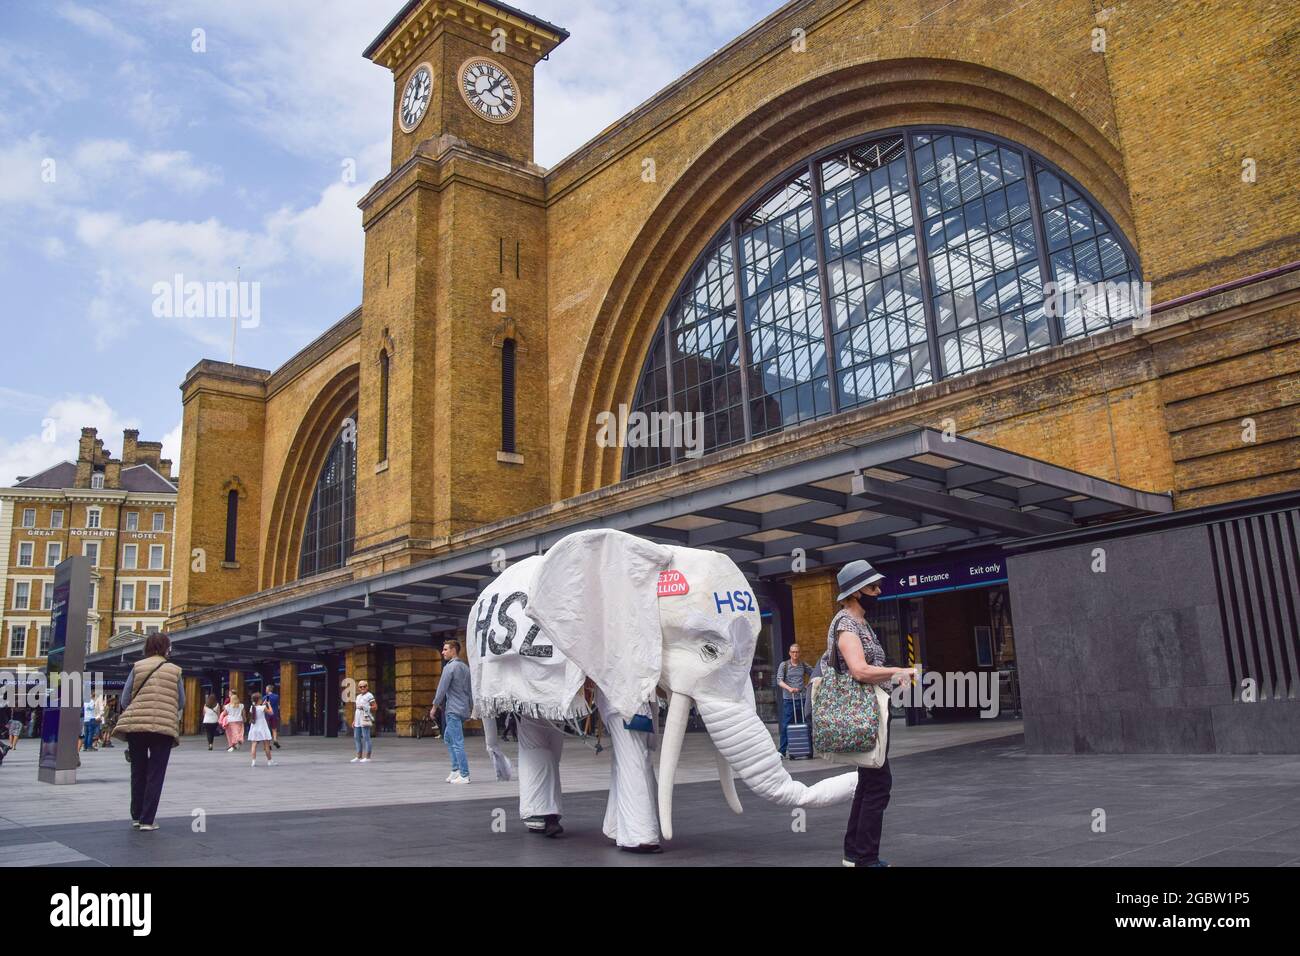 Londra, Regno Unito. 5 agosto 2021. I manifestanti che indossano un costume da elefante bianco 'HS2' sono condotti fuori dalla stazione ferroviaria da un altro protestore. Gli attivisti si sono riuniti fuori dalla King's Cross Station per protestare contro il nuovo sistema ferroviario ad alta velocità 2 (HS2), che gli ambientalisti dicono sarà 'ecologicamente devastante' e costerà ai contribuenti £170 miliardi. (Credit: Vuk Valcic/Alamy Live News) Foto Stock